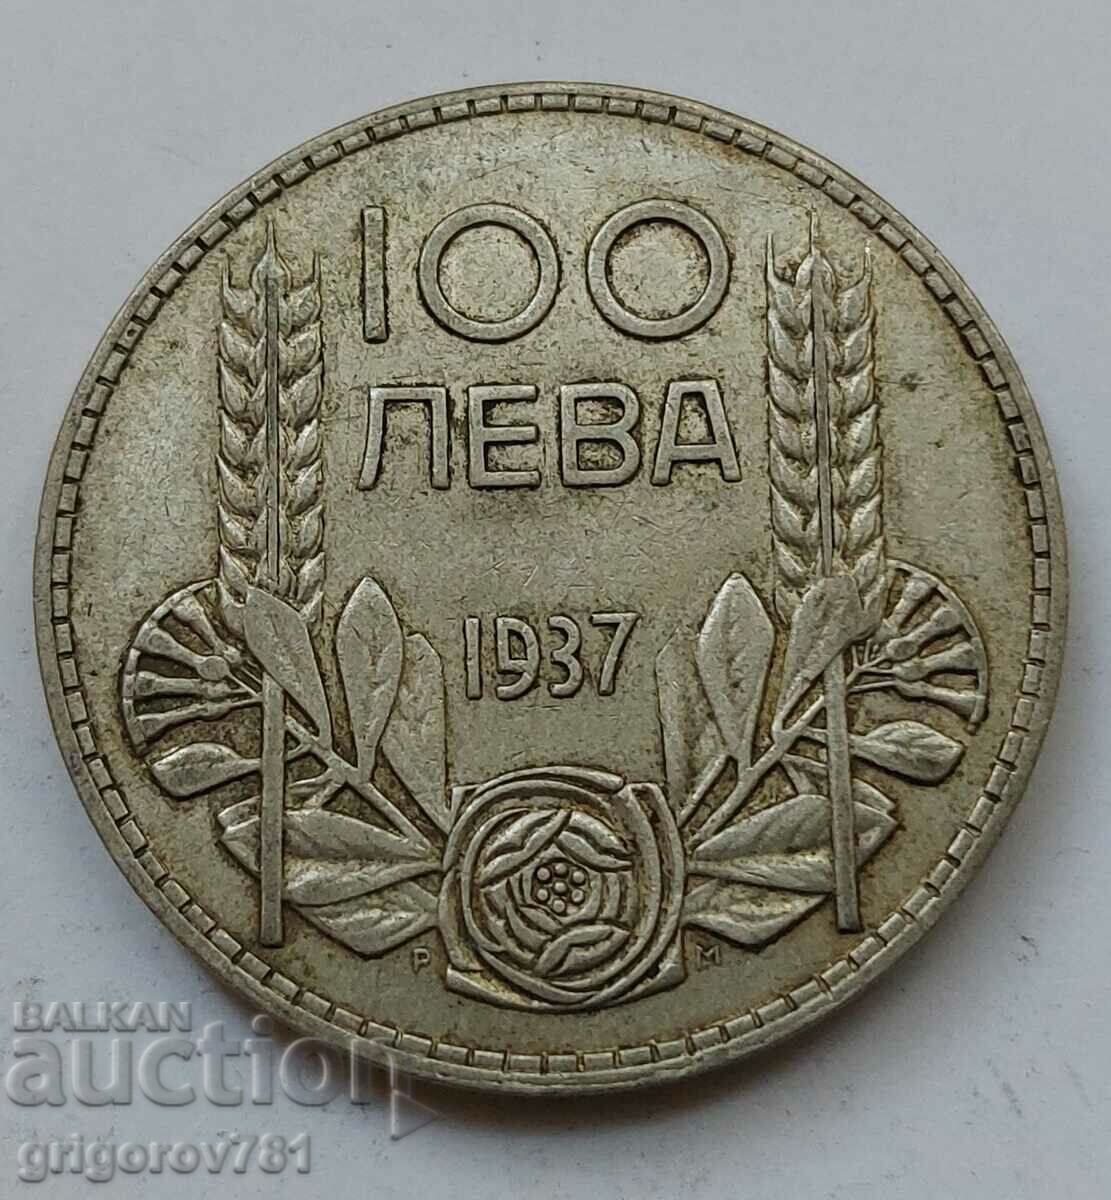 100 leva silver Bulgaria 1937 - silver coin #79